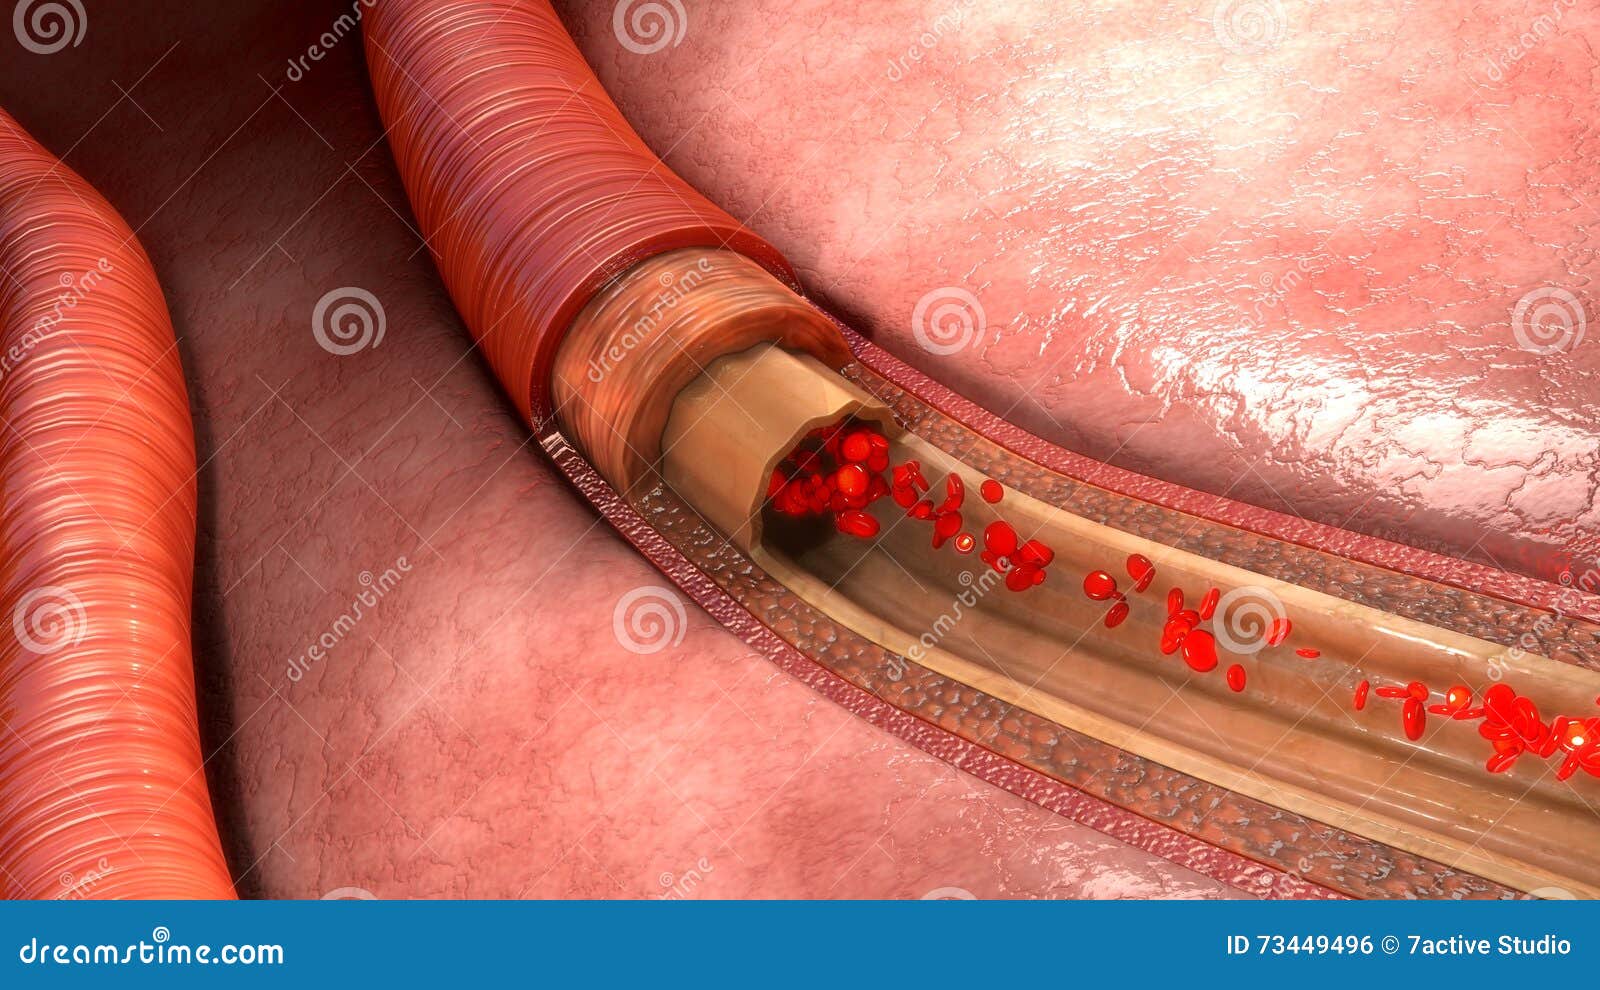 blood flow in vessels